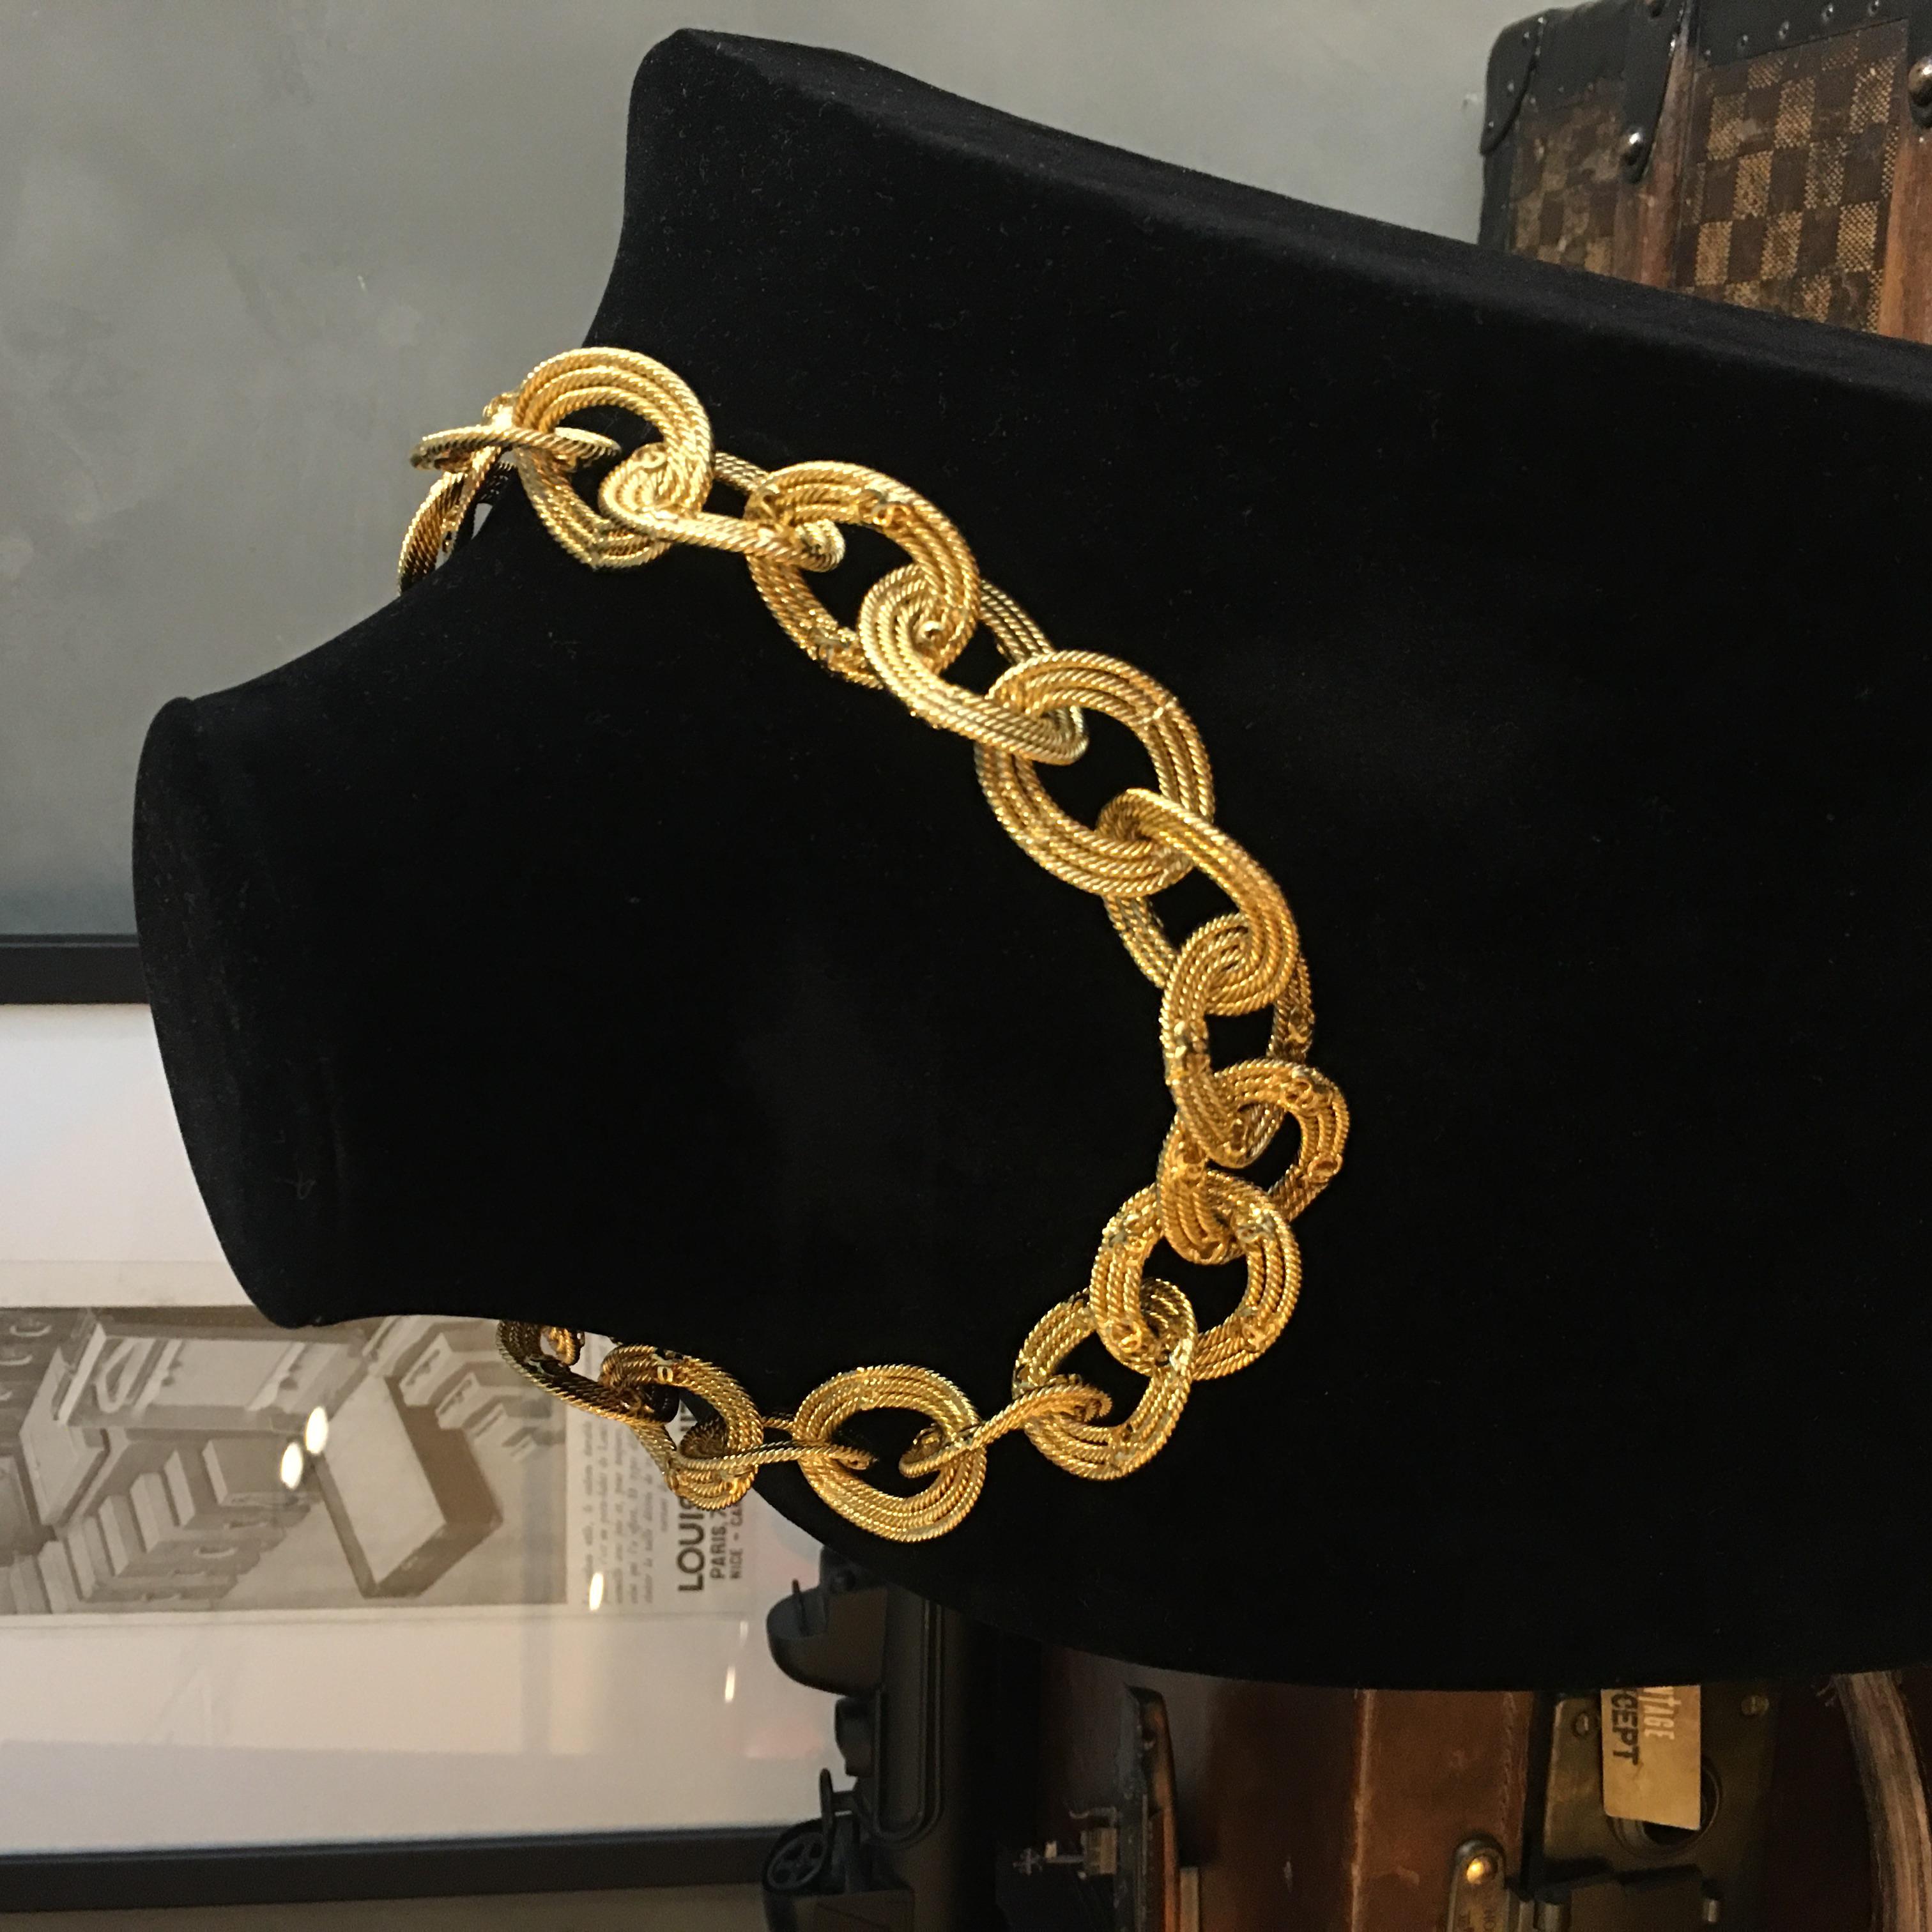 Marque : Chanel
Référence : JW320
Dimensions du collier : 46.5cm
MATERIAL : Métal doré
Année : 1989-1991
Fabriqué en France
Remarque : Le collier peut être porté entièrement à plat ou comme sur la photo du cou du modèle.

Veuillez noter : les bijoux